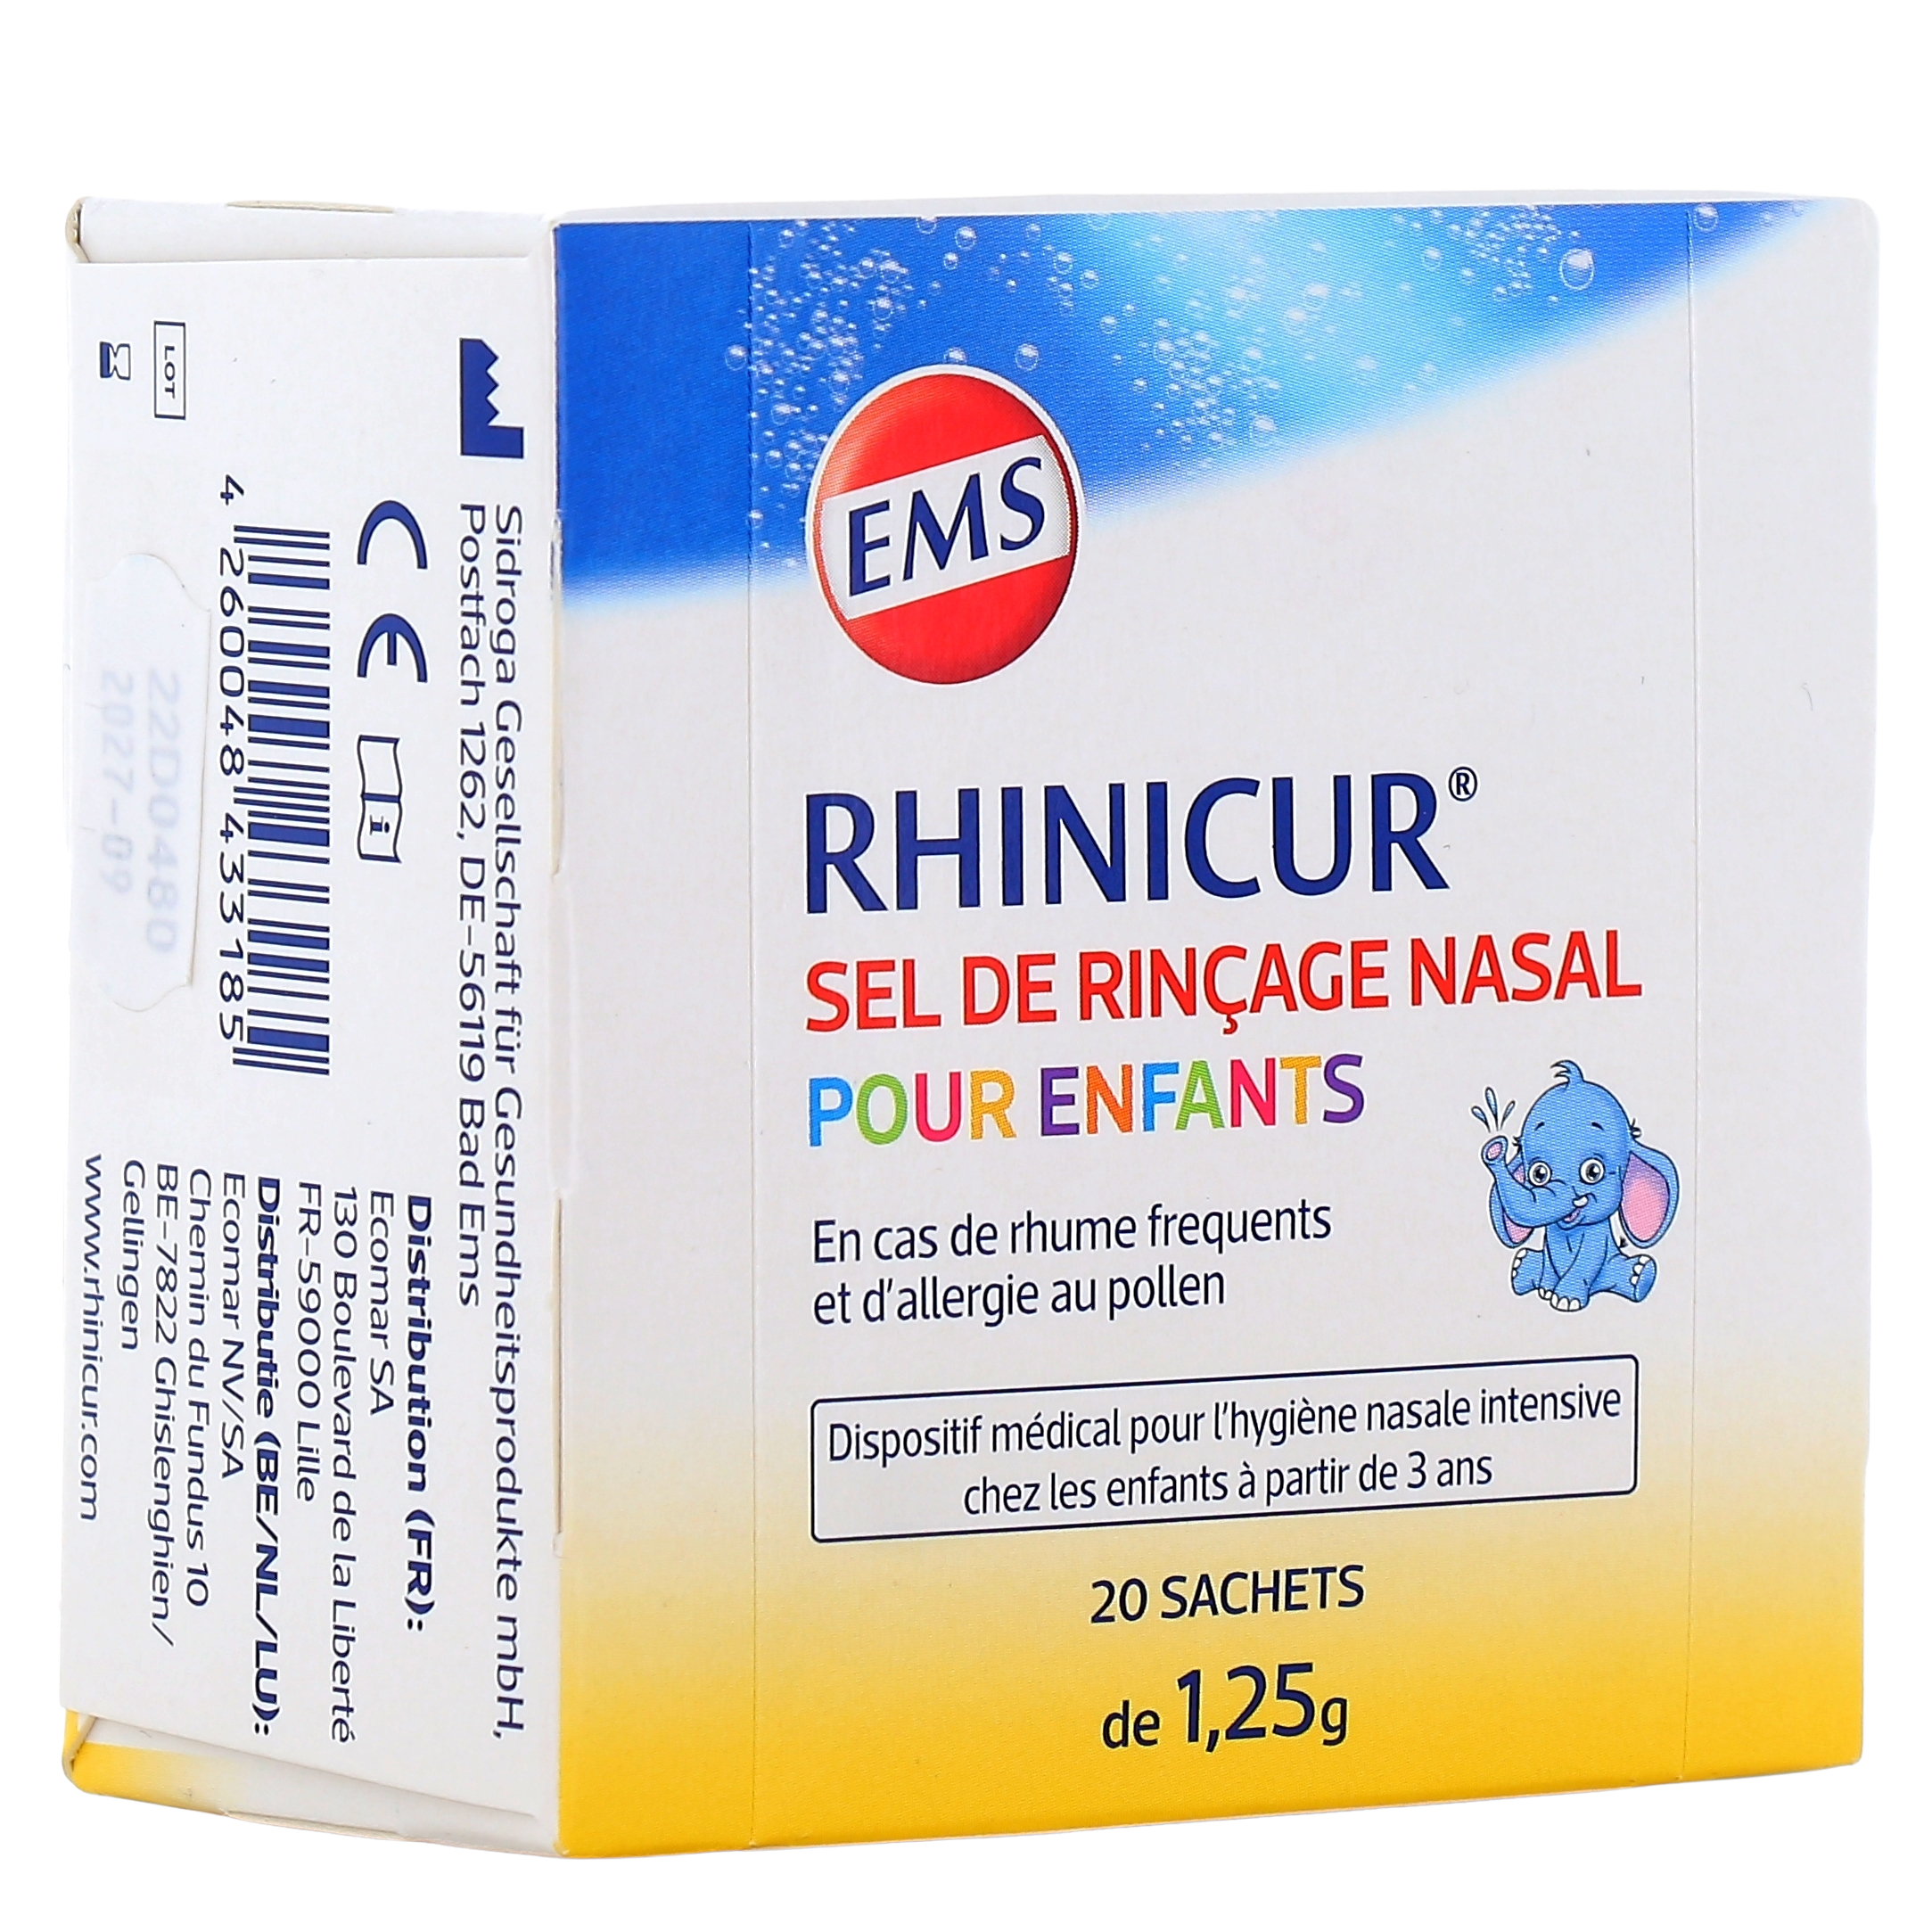 Rhinicur douche nasale pour enfants - Lavage de nez - Rhume, allergie